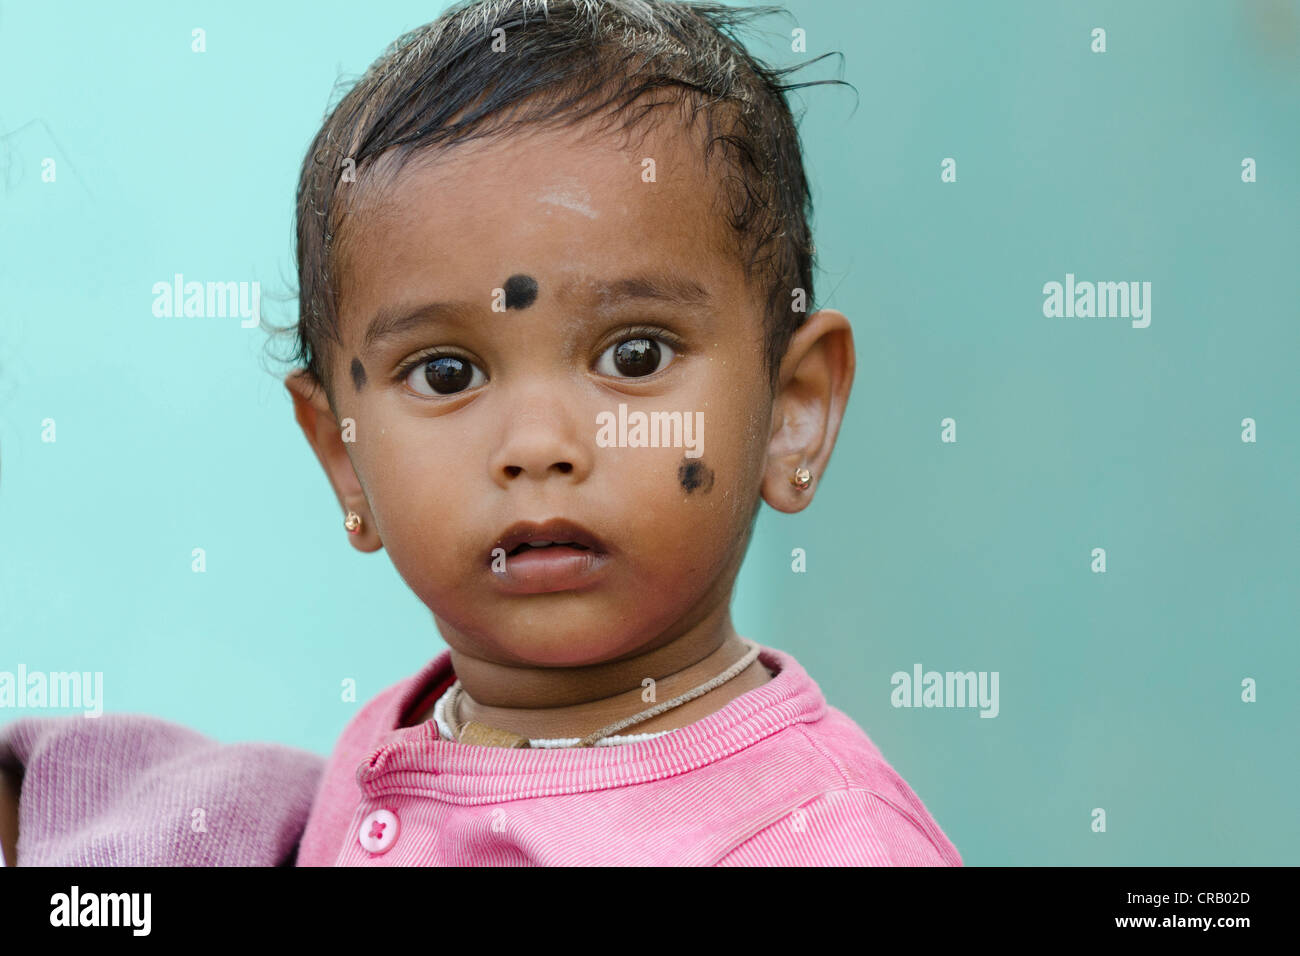 Kleinkind mit Bindi oder Punkt auf der Stirn, Karur, Tamil Nadu, Indien, Asien Stockfoto